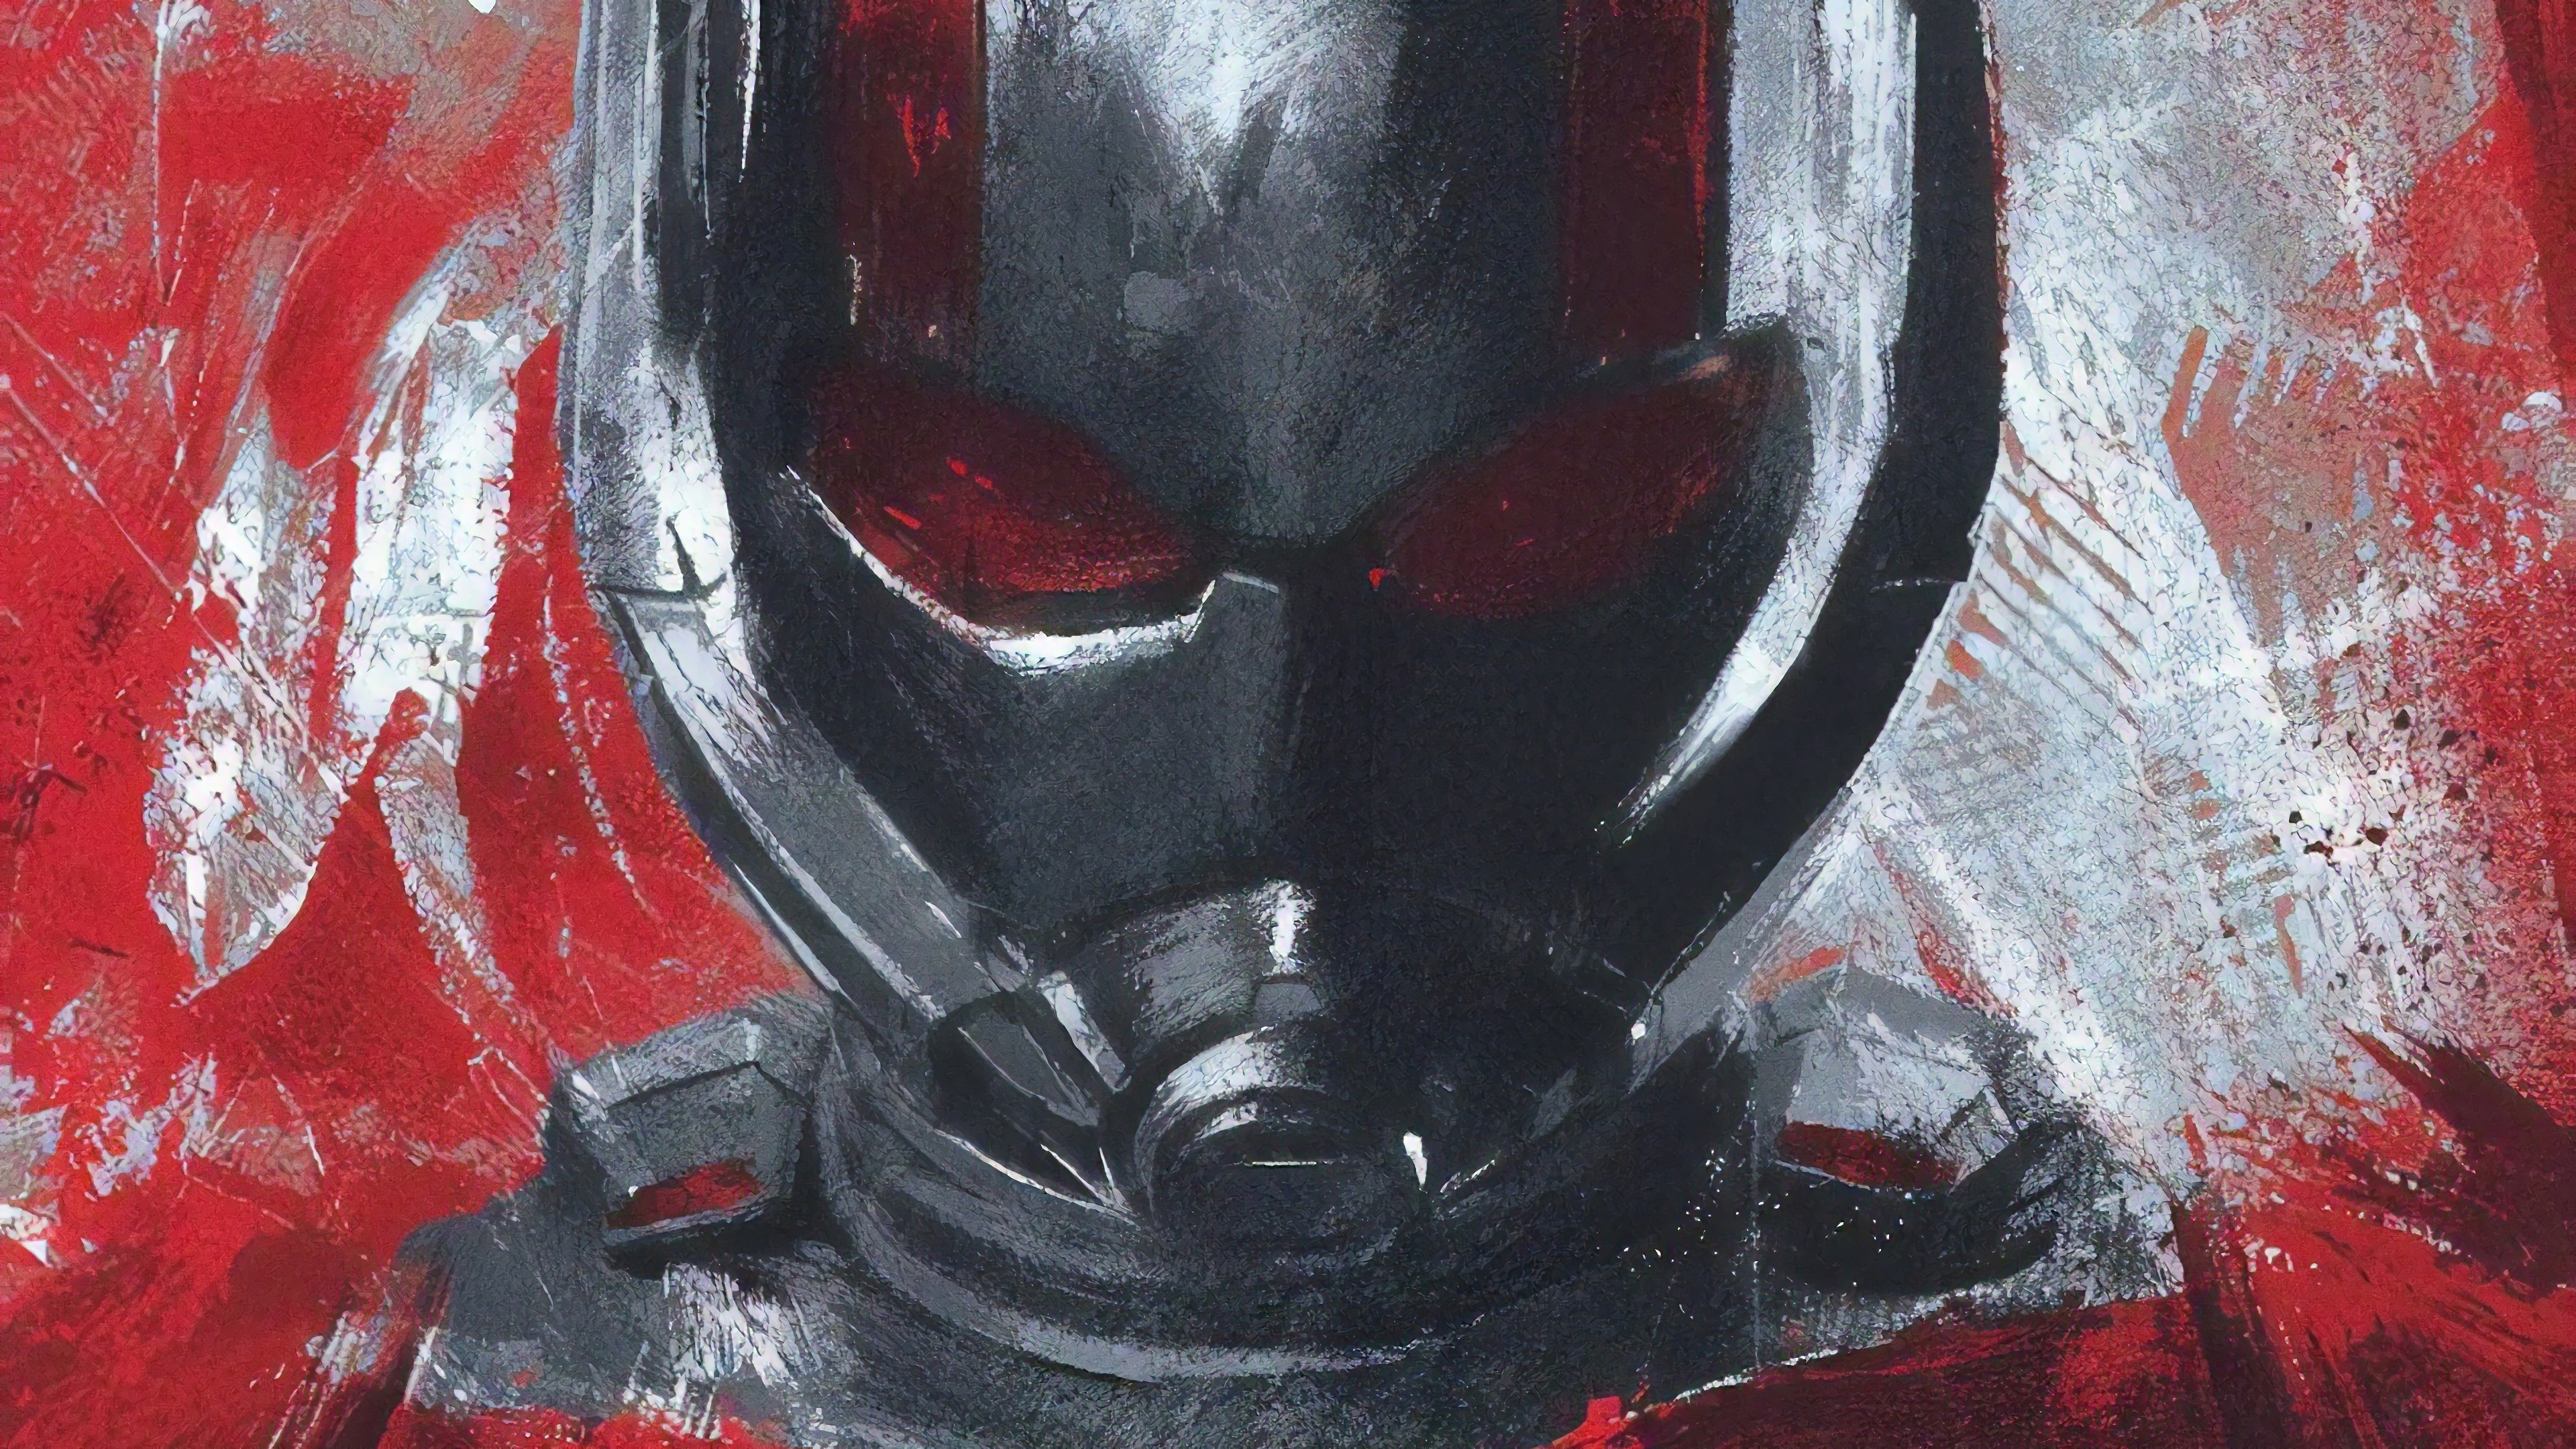 Avengers: Endgame Ant Man 4K Wallpaper